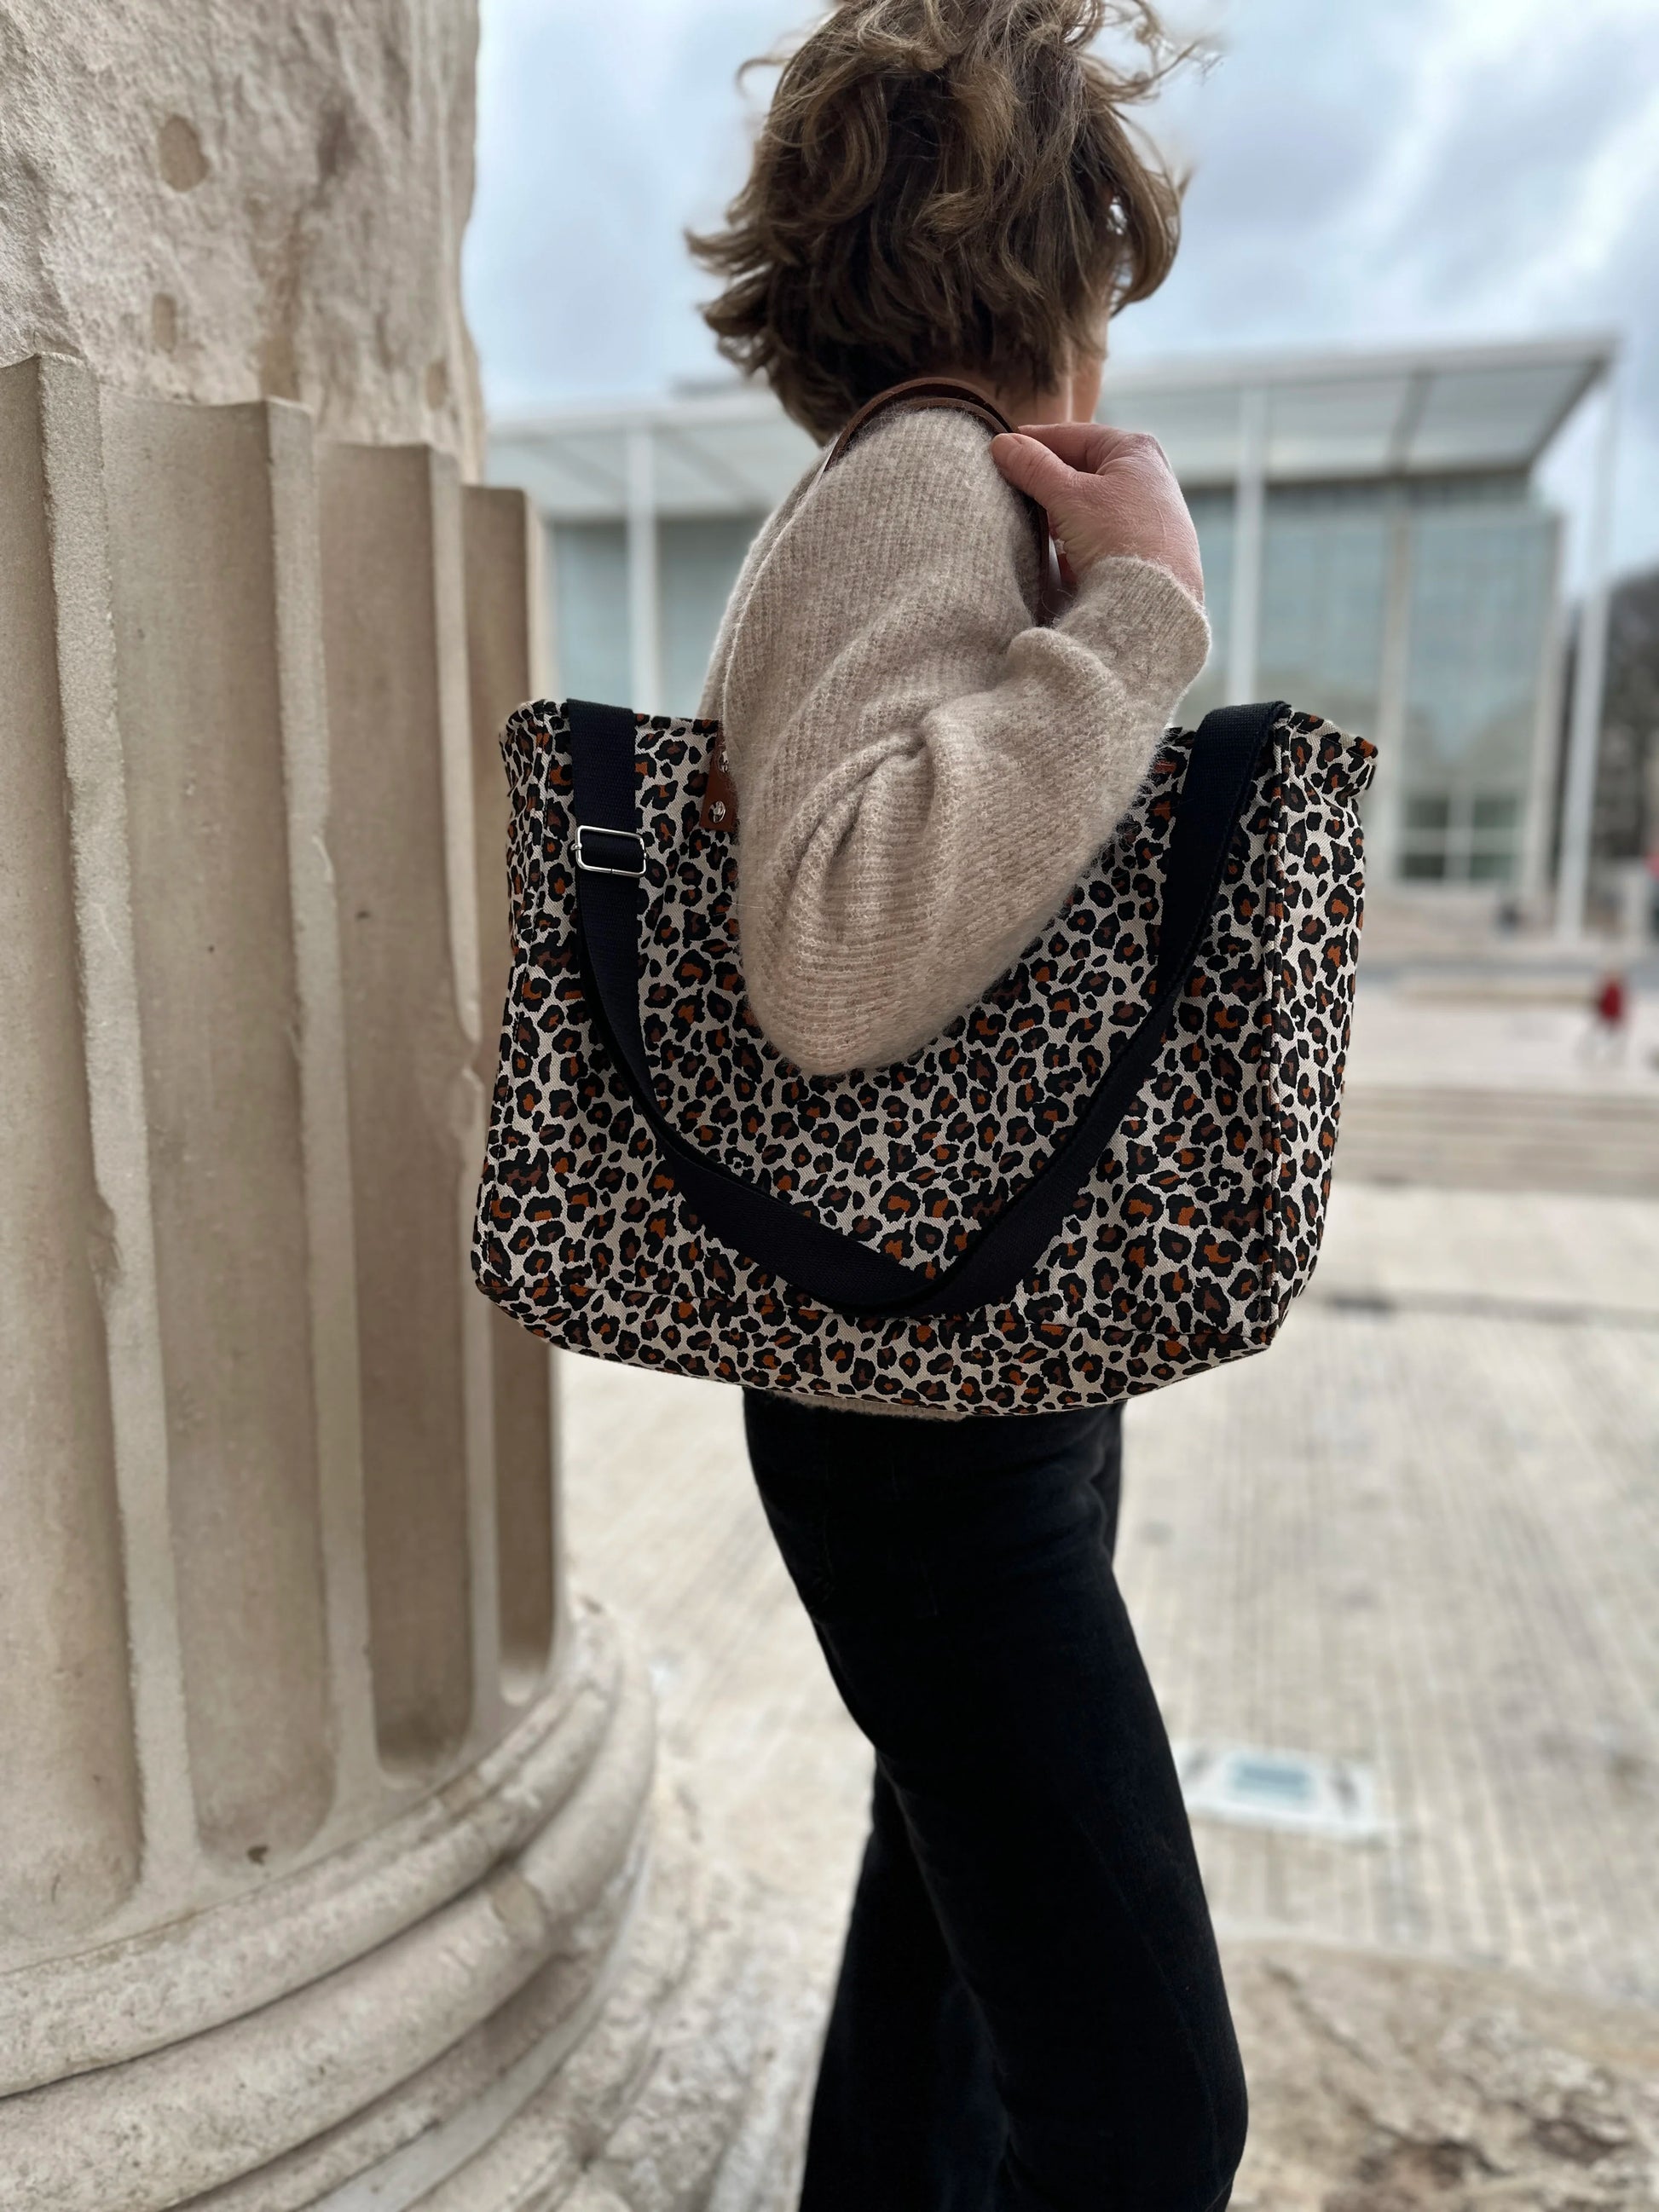 Femme portant le sac Shopper léopard à l'épaule, avec bandoulière amovible réglable.